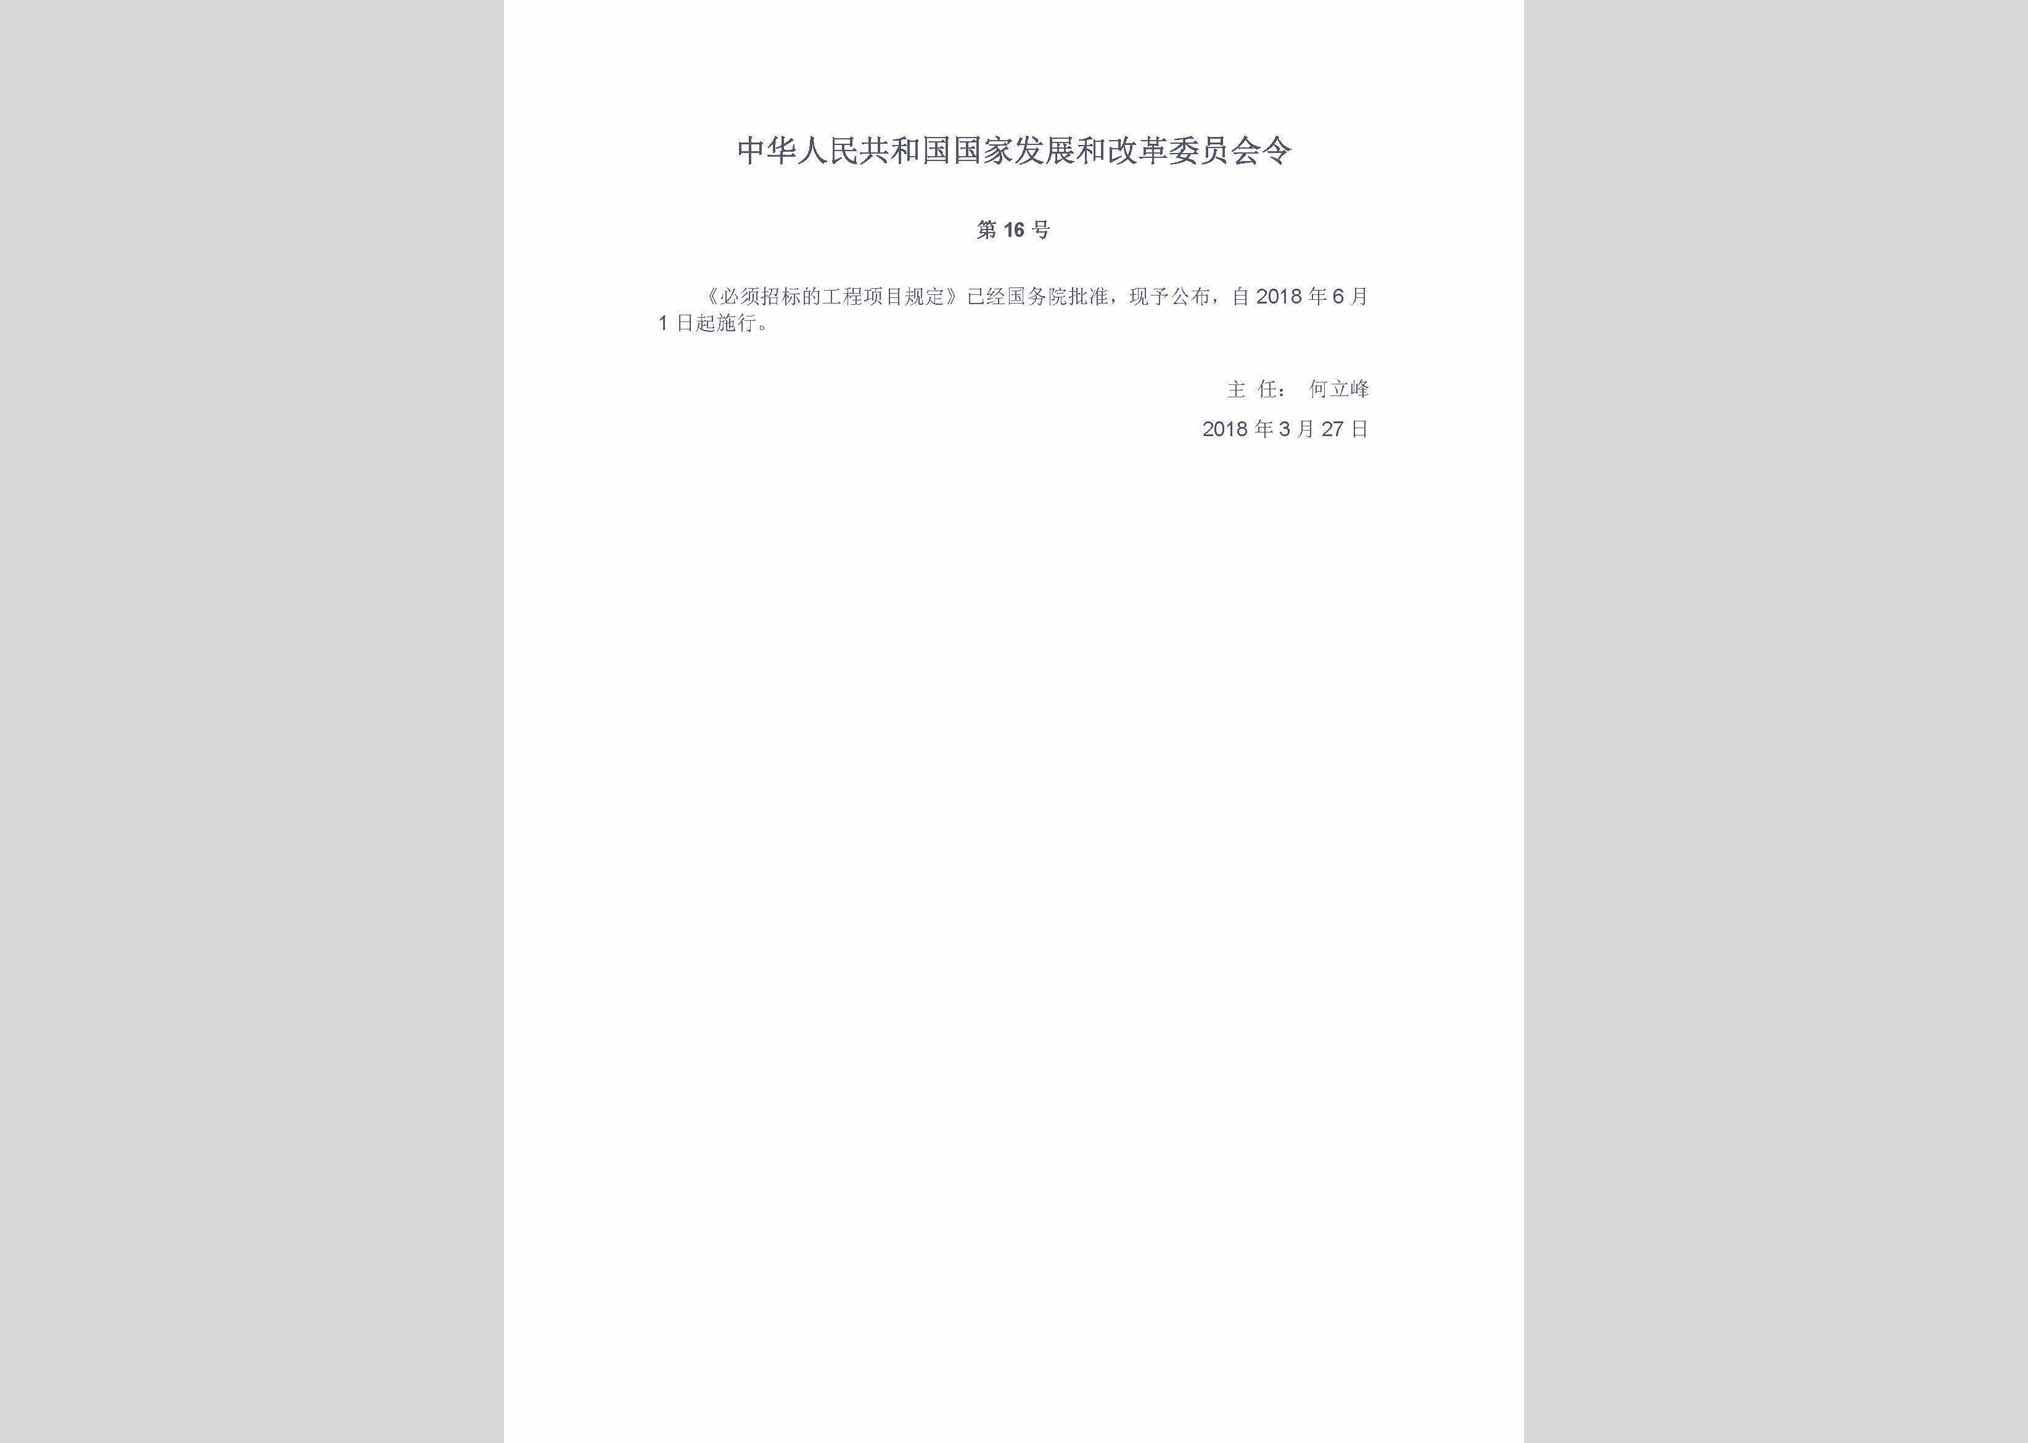 中华人民共和国国家发展和改革委员会令第16号：必须招标的工程项目规定